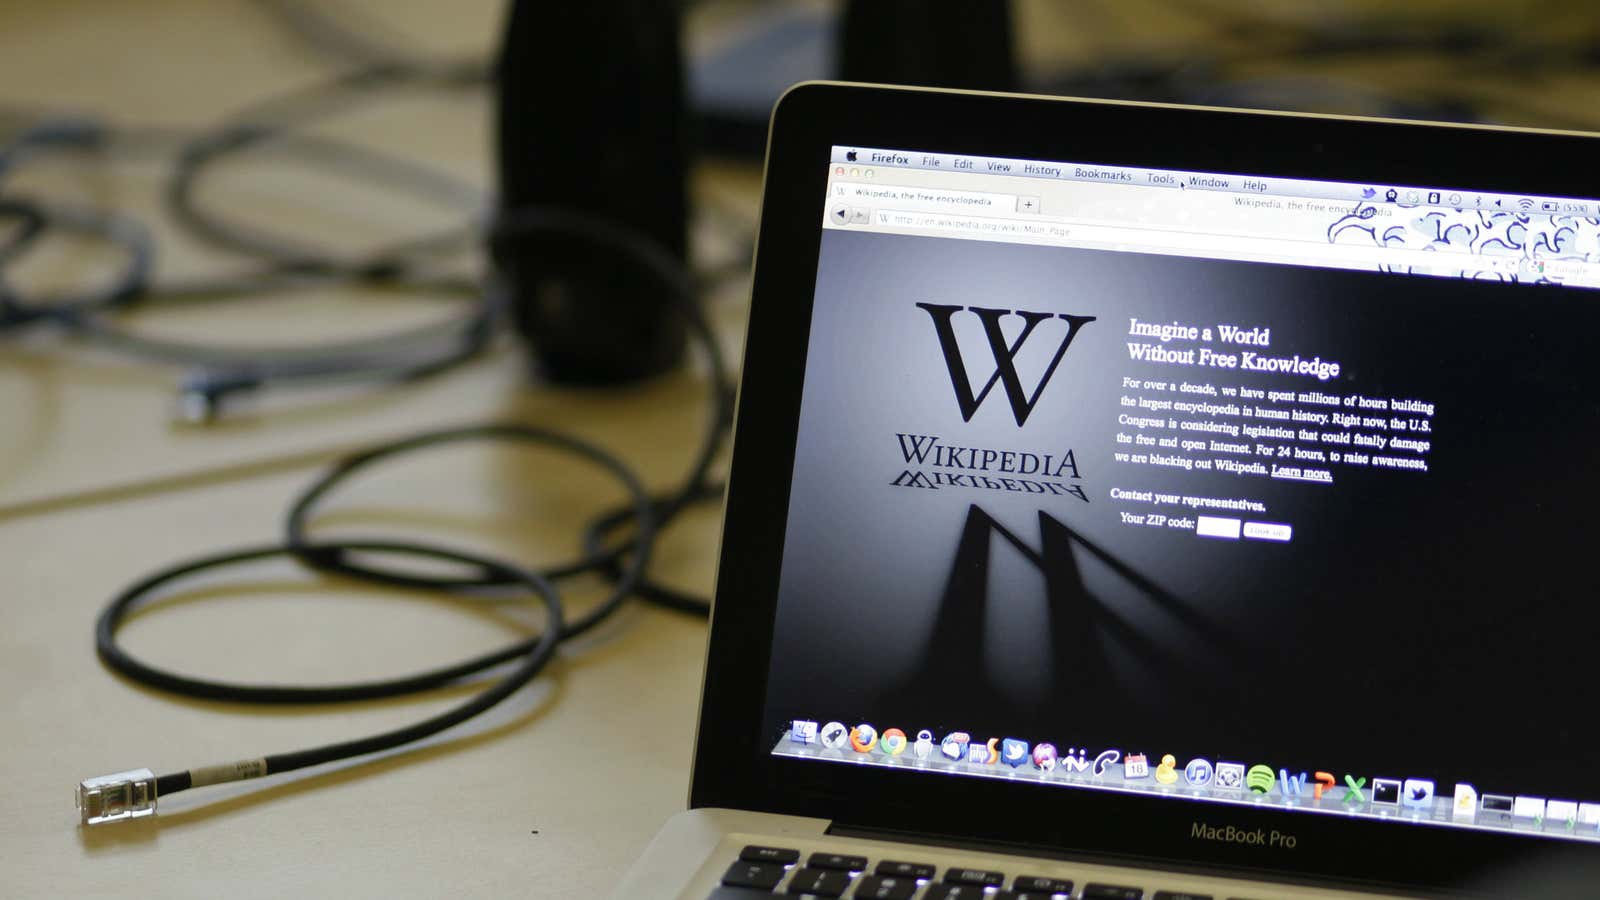 Beware of hackers posing as Wikipedia workers.